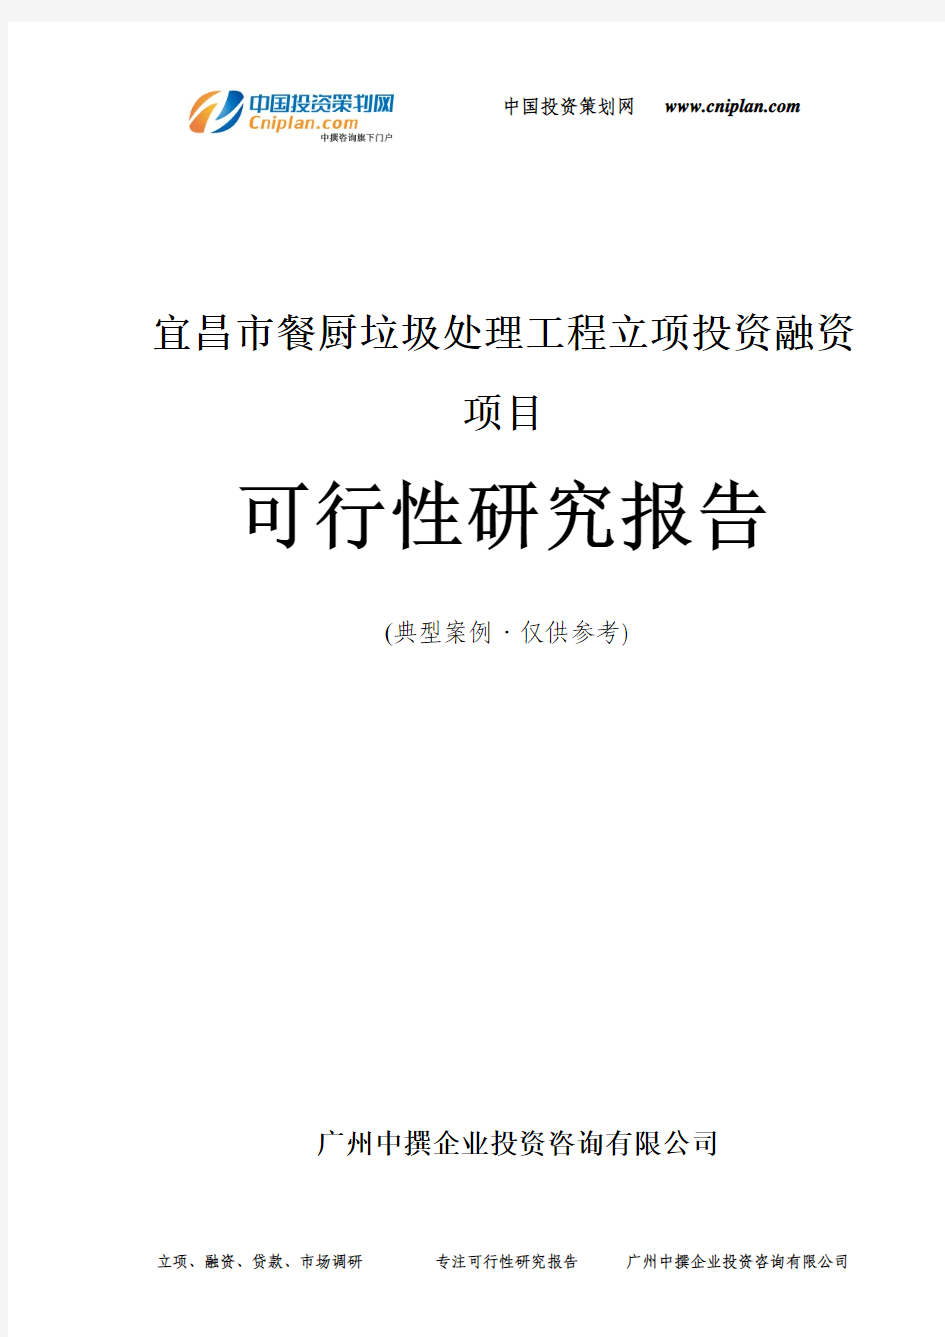 宜昌市餐厨垃圾处理工程融资投资立项项目可行性研究报告(中撰咨询)